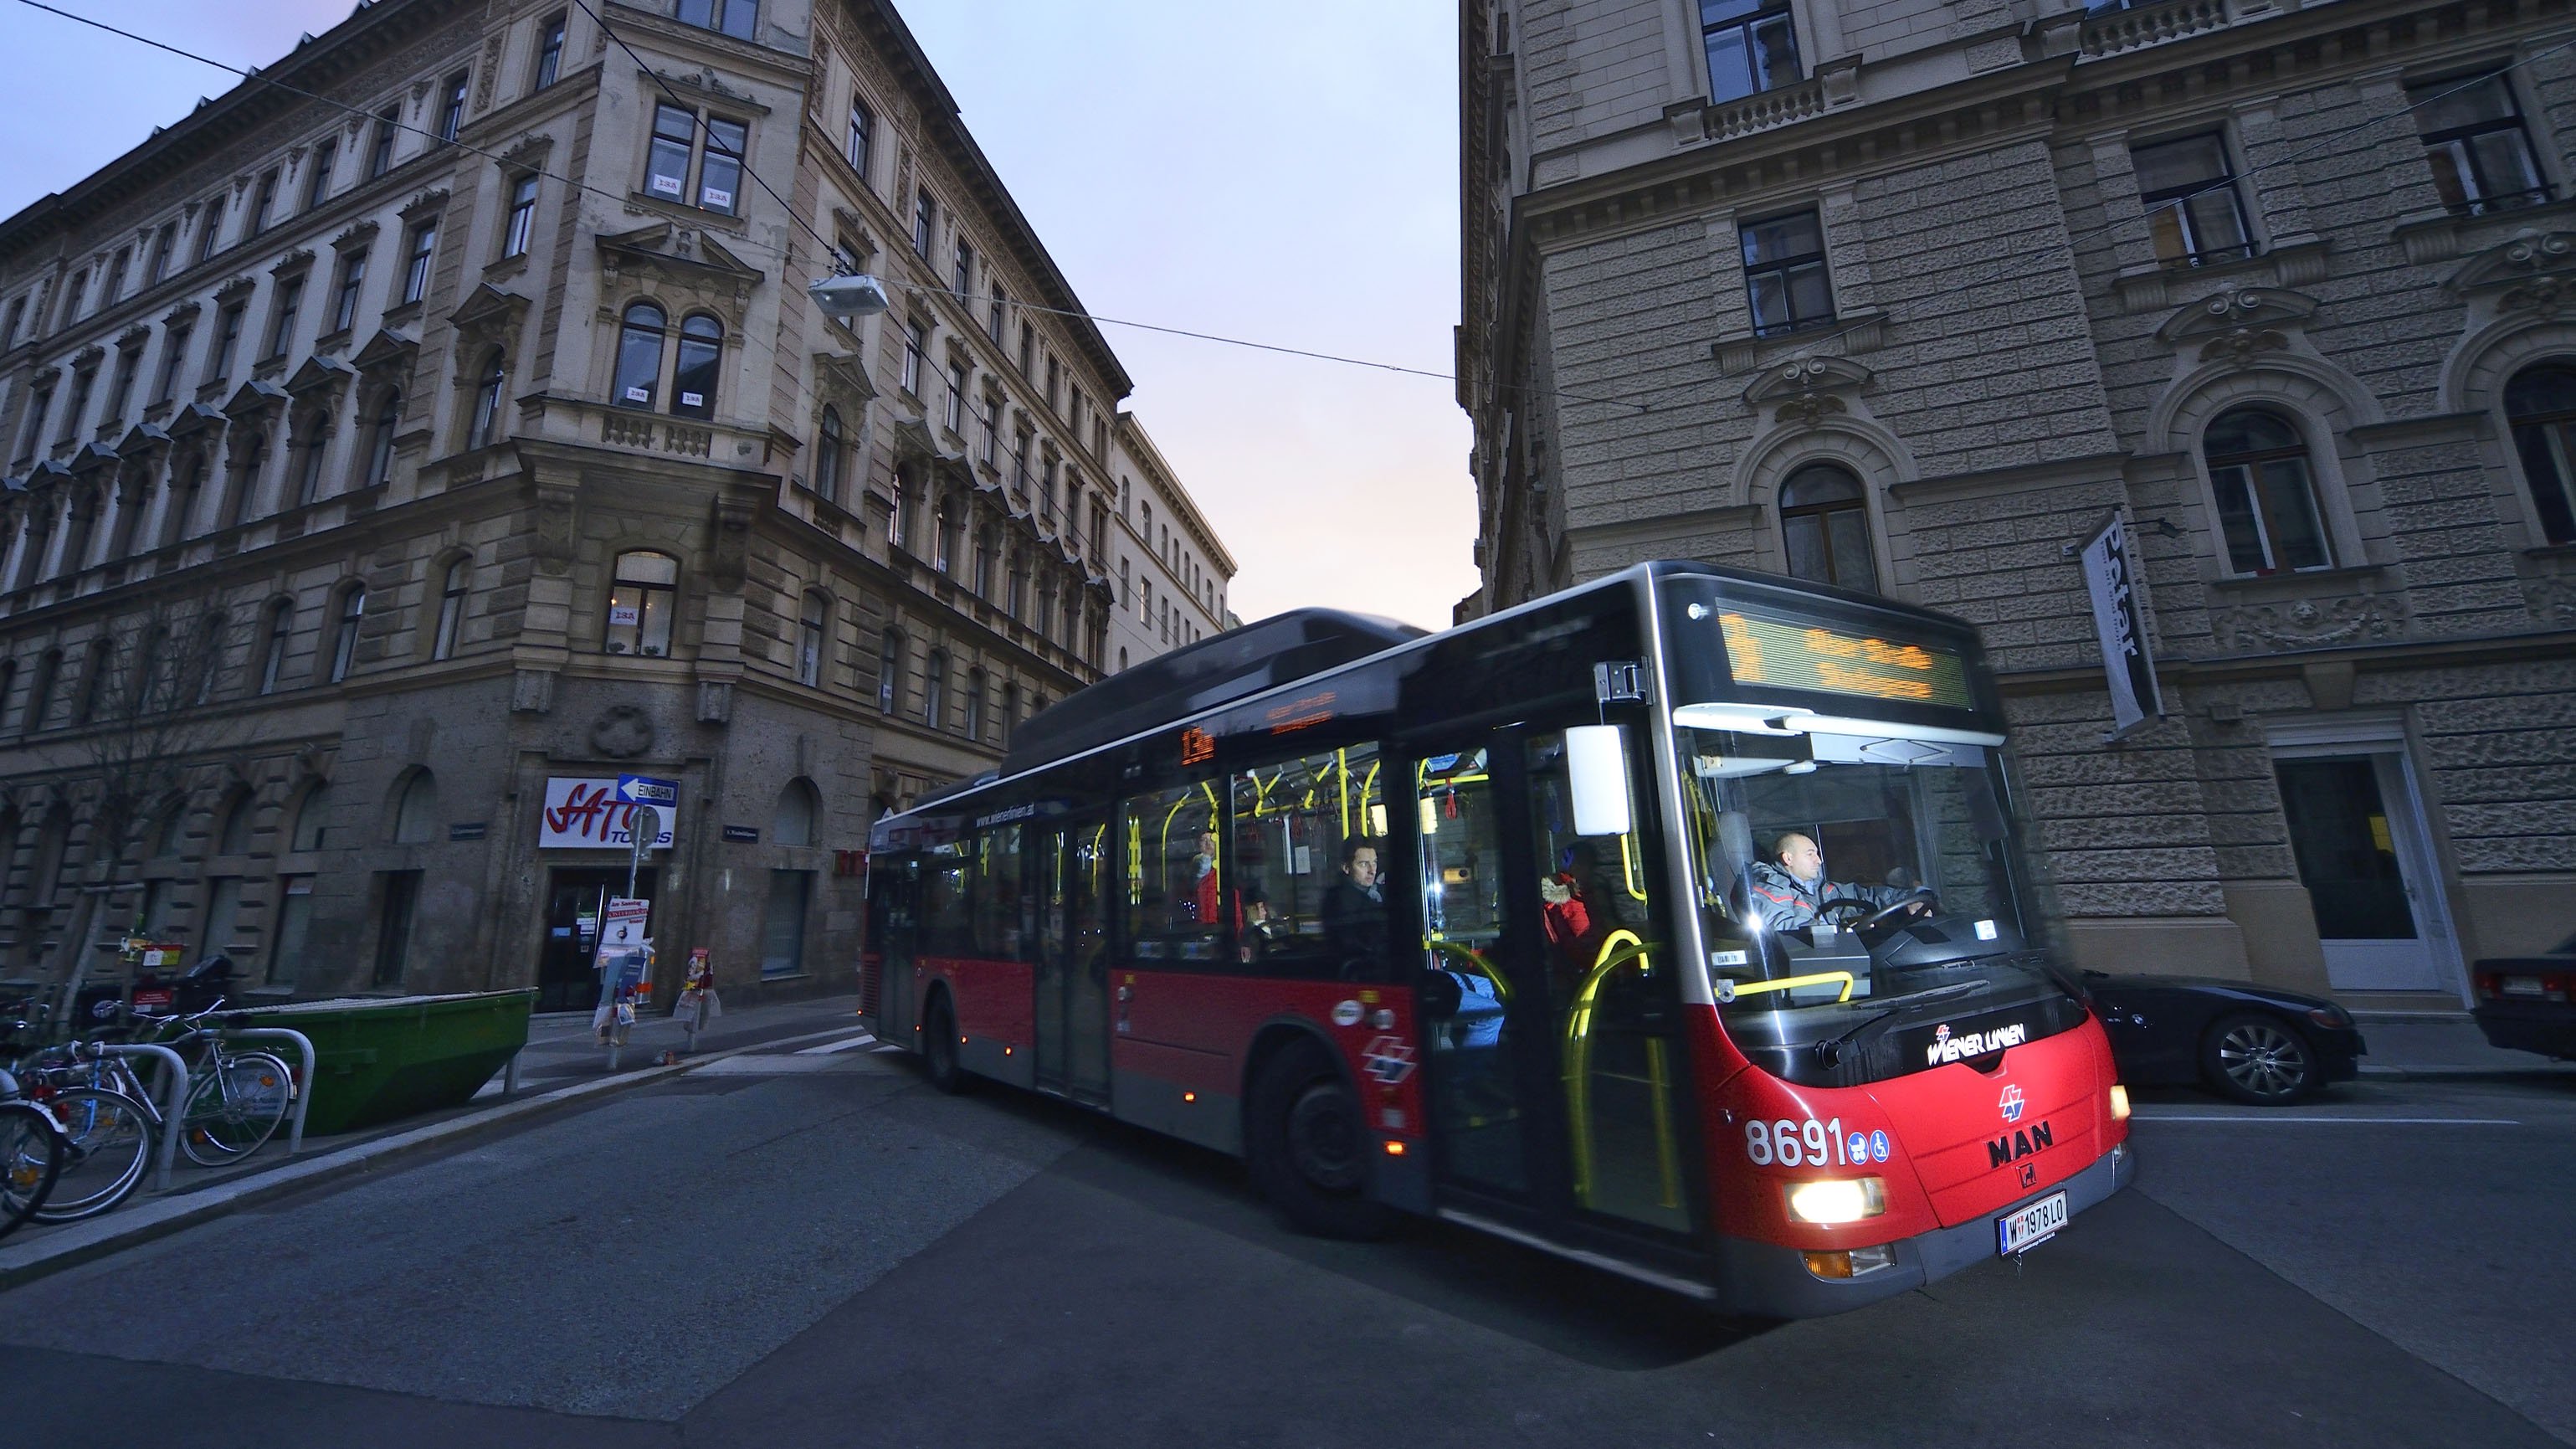 Bus der Wiener Linien schlängelt sich in der Dämmerung durch die Straßen.